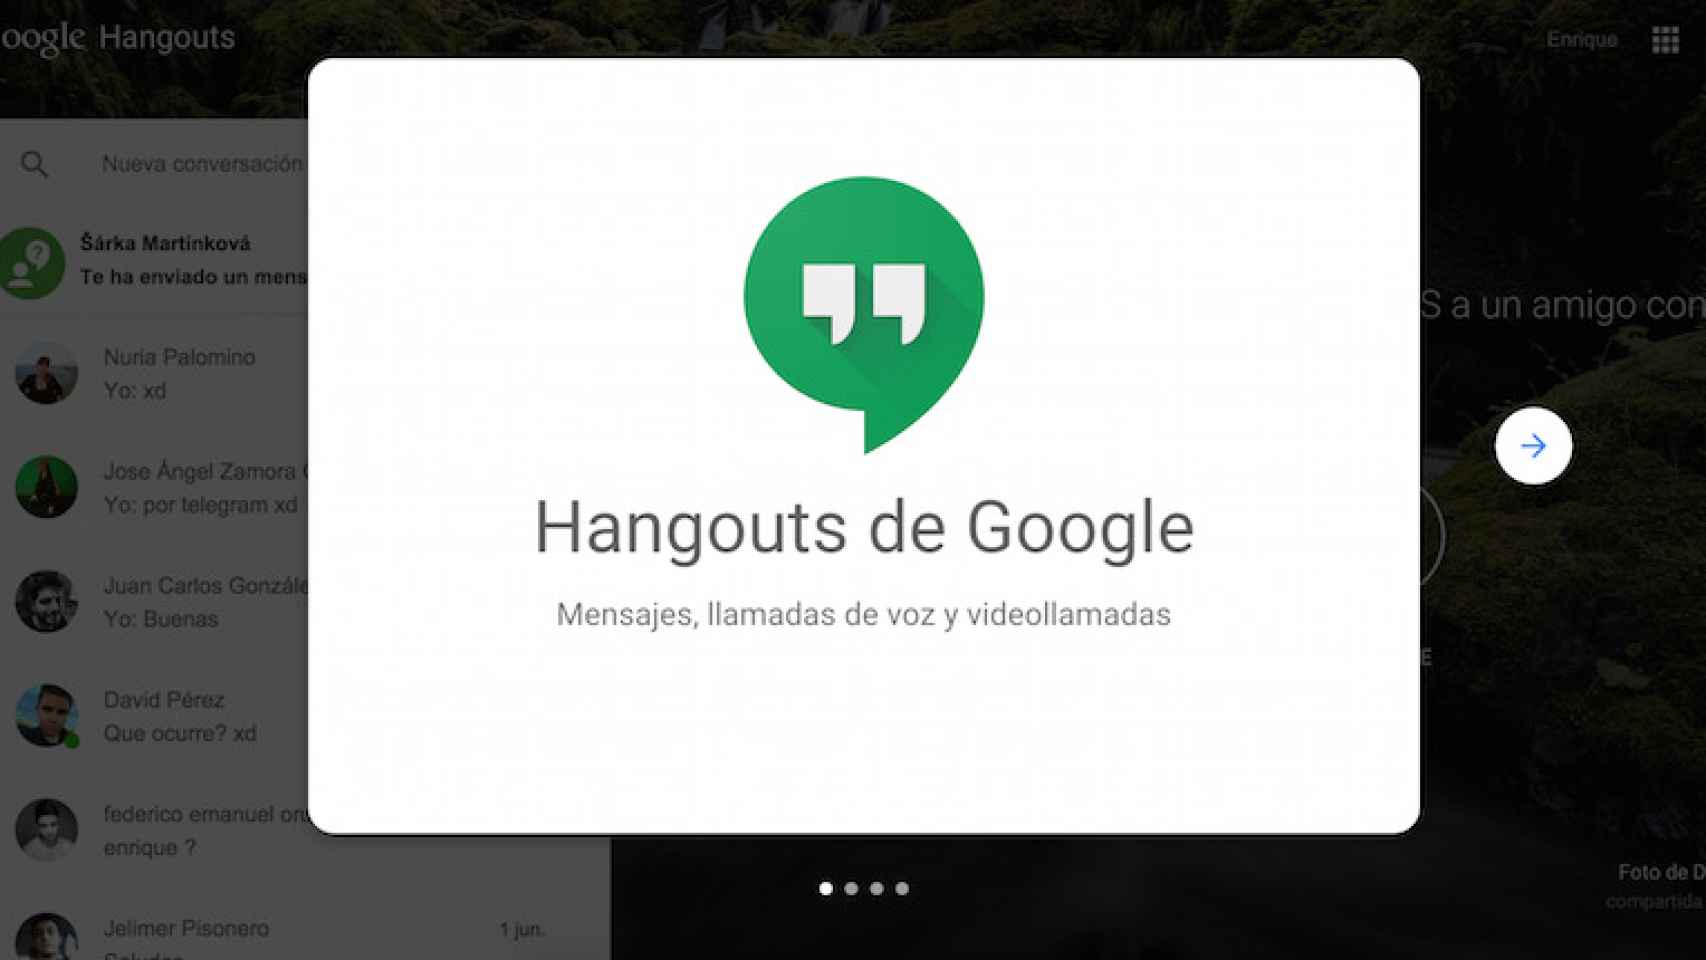 Nueva versión web de Google Hangouts: mensajería, voz y vídeo